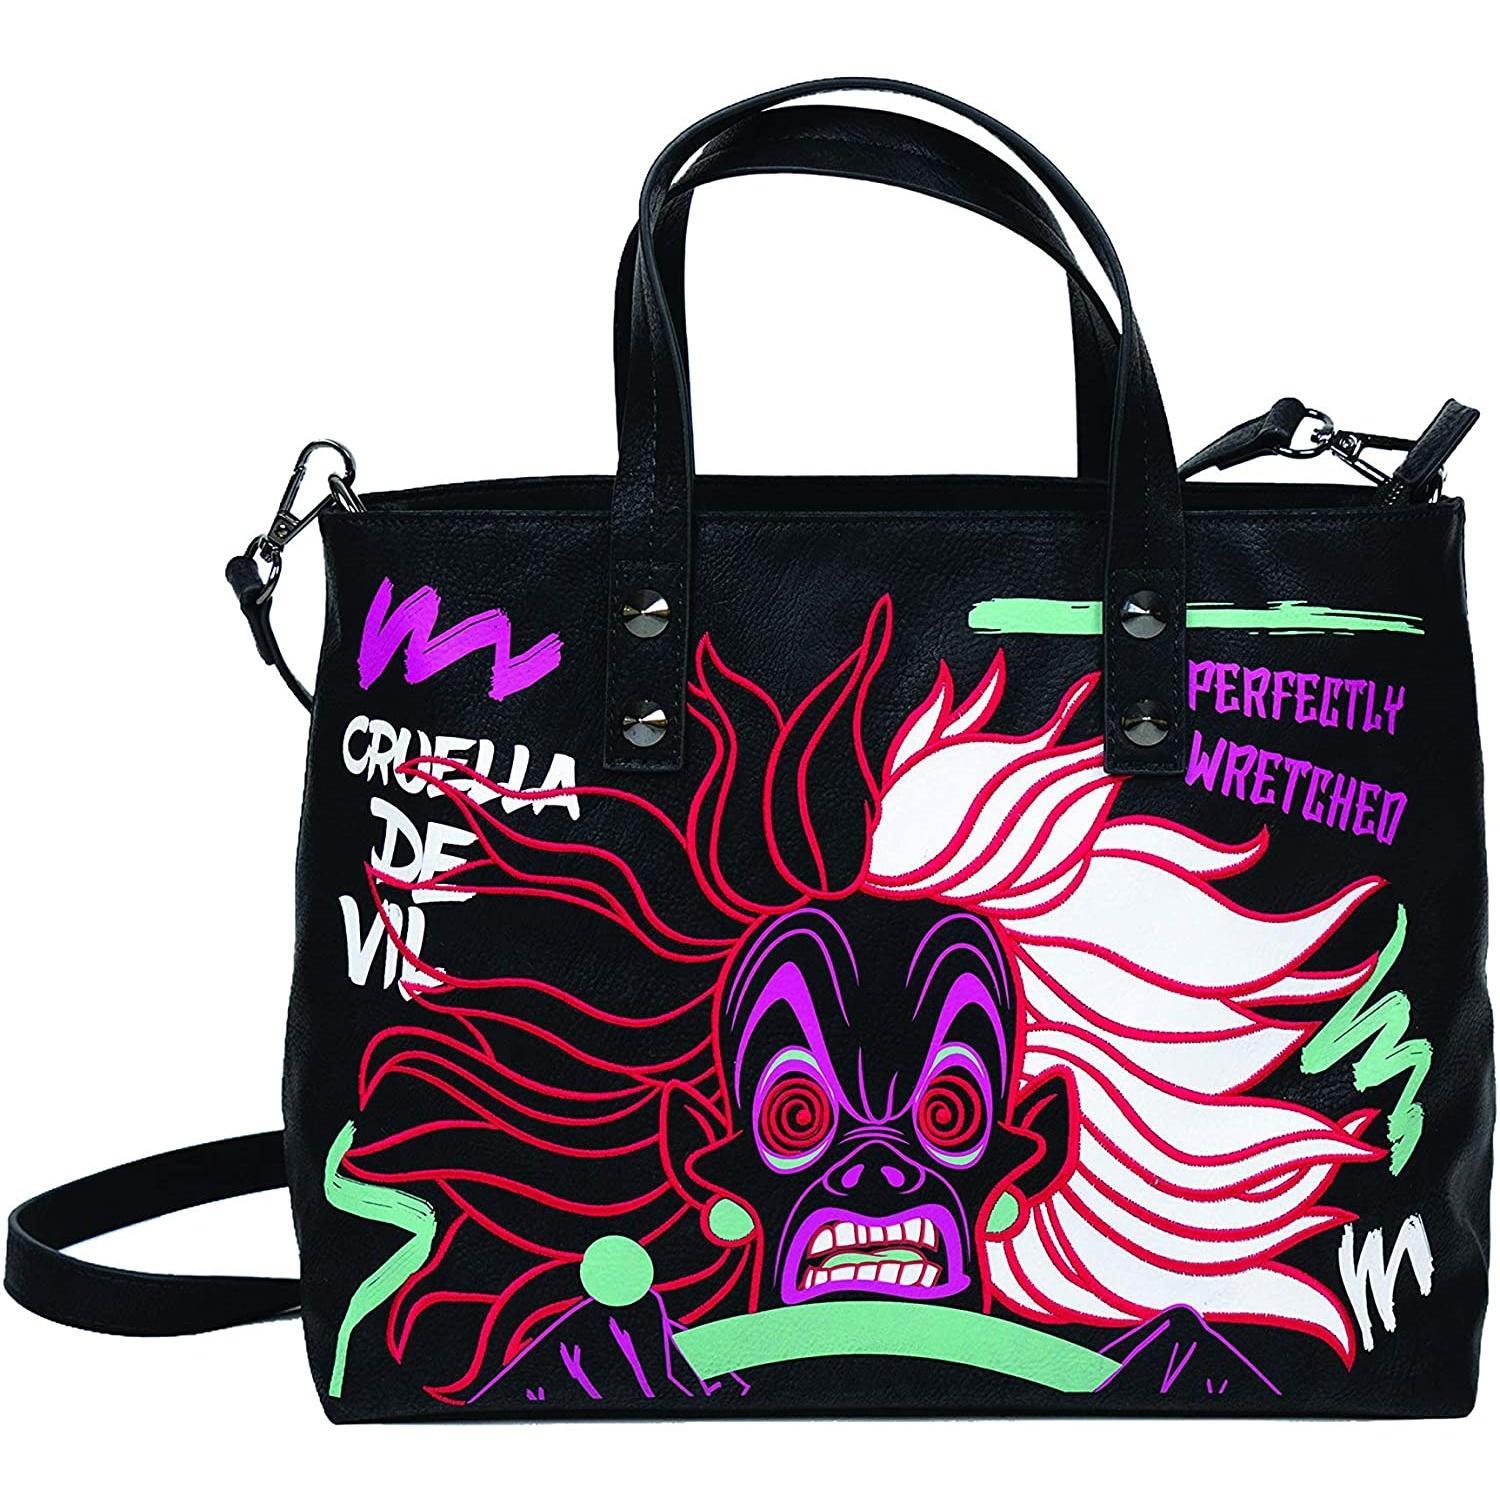 Danielle Nicole Womens/Ladies Disney Cruella De Vil Tote Bag (Black/Multicoloured) (One Size)